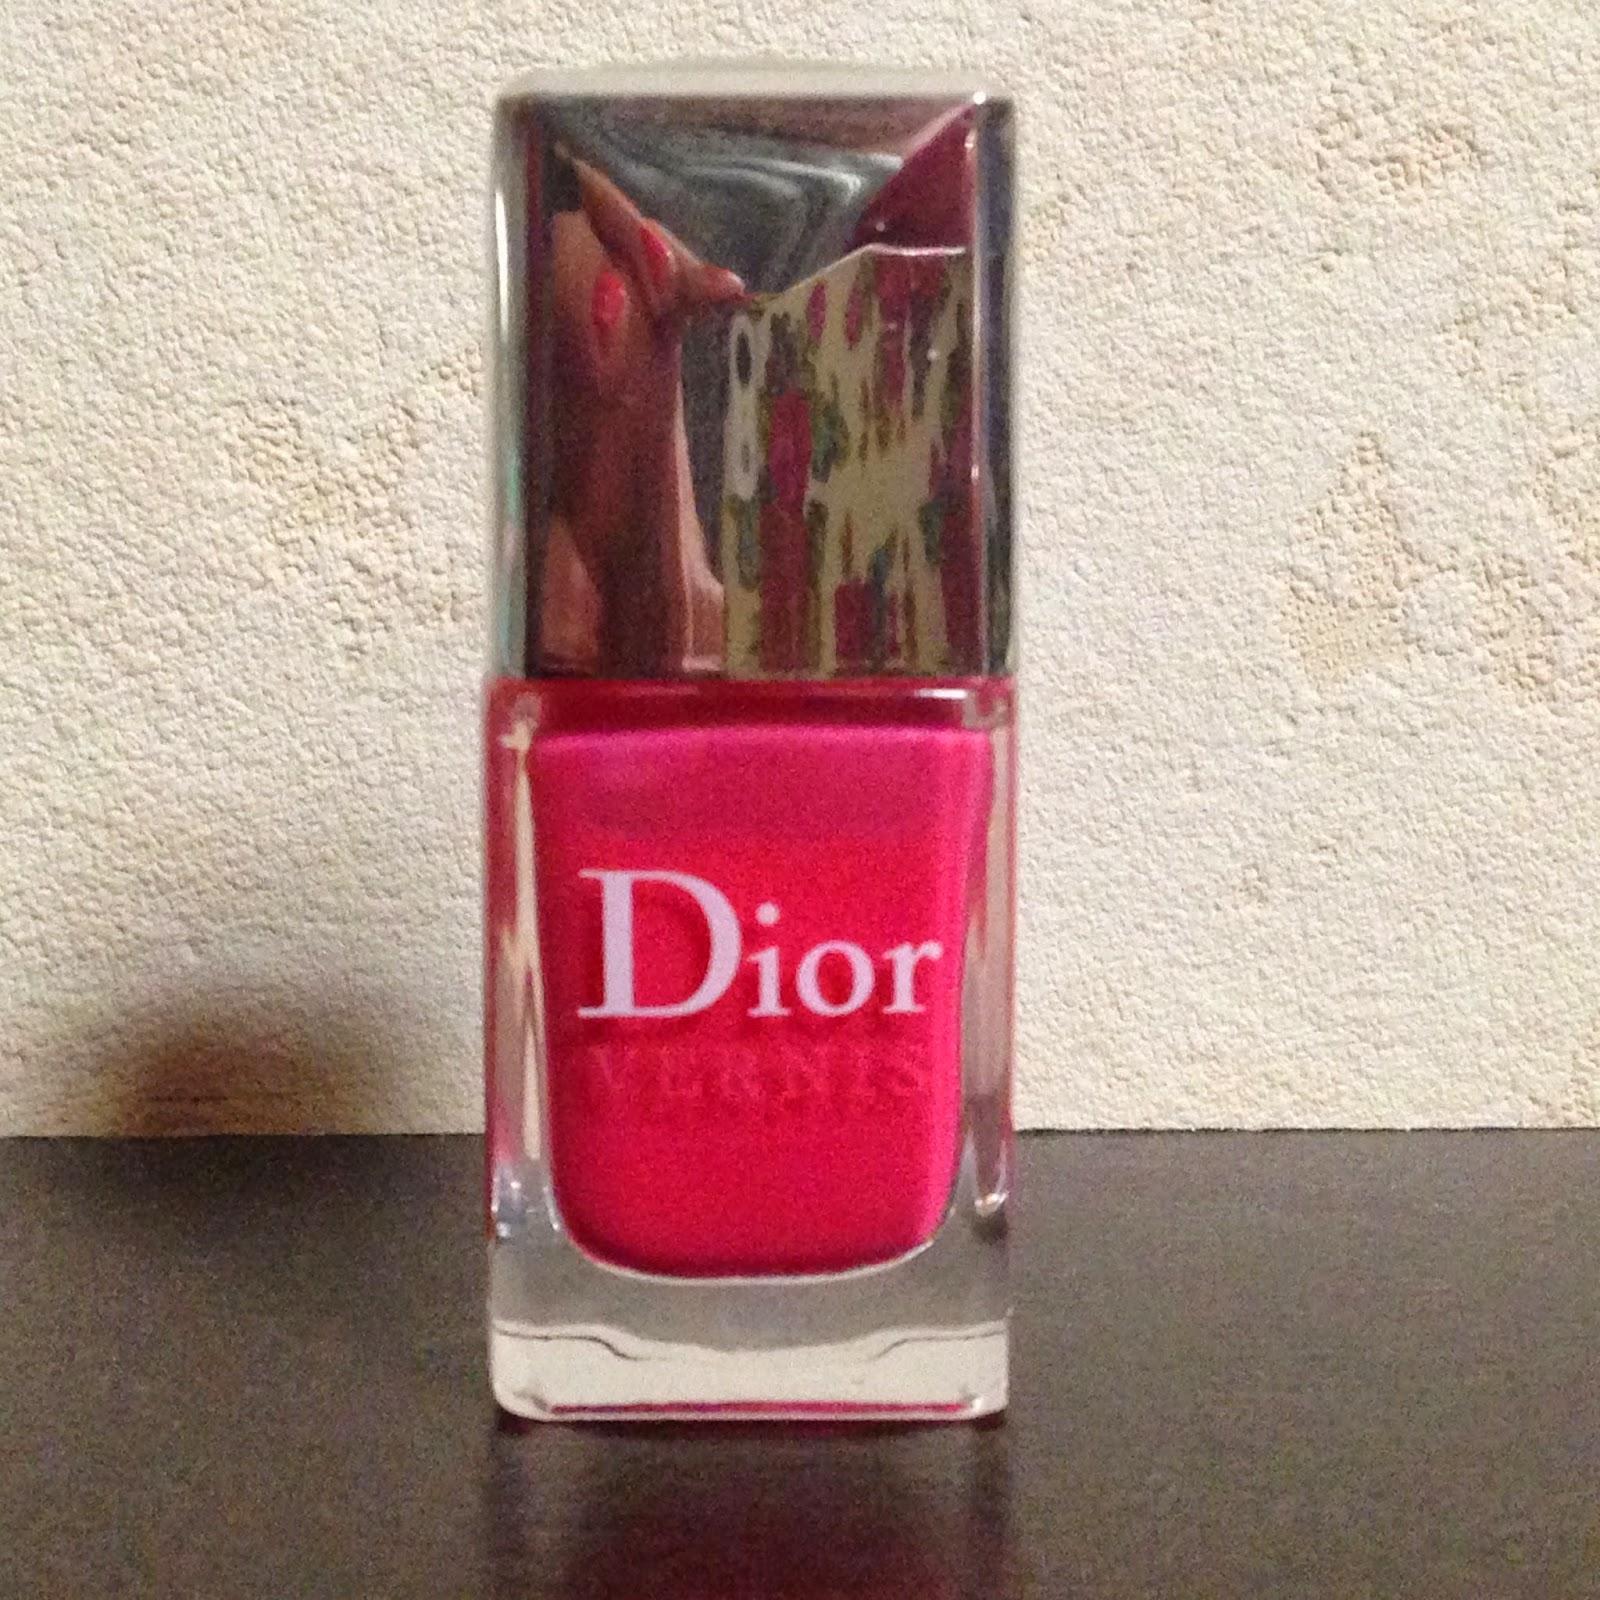 Sur mes ongles - Le magnifique vernis Cosmo de chez Dior